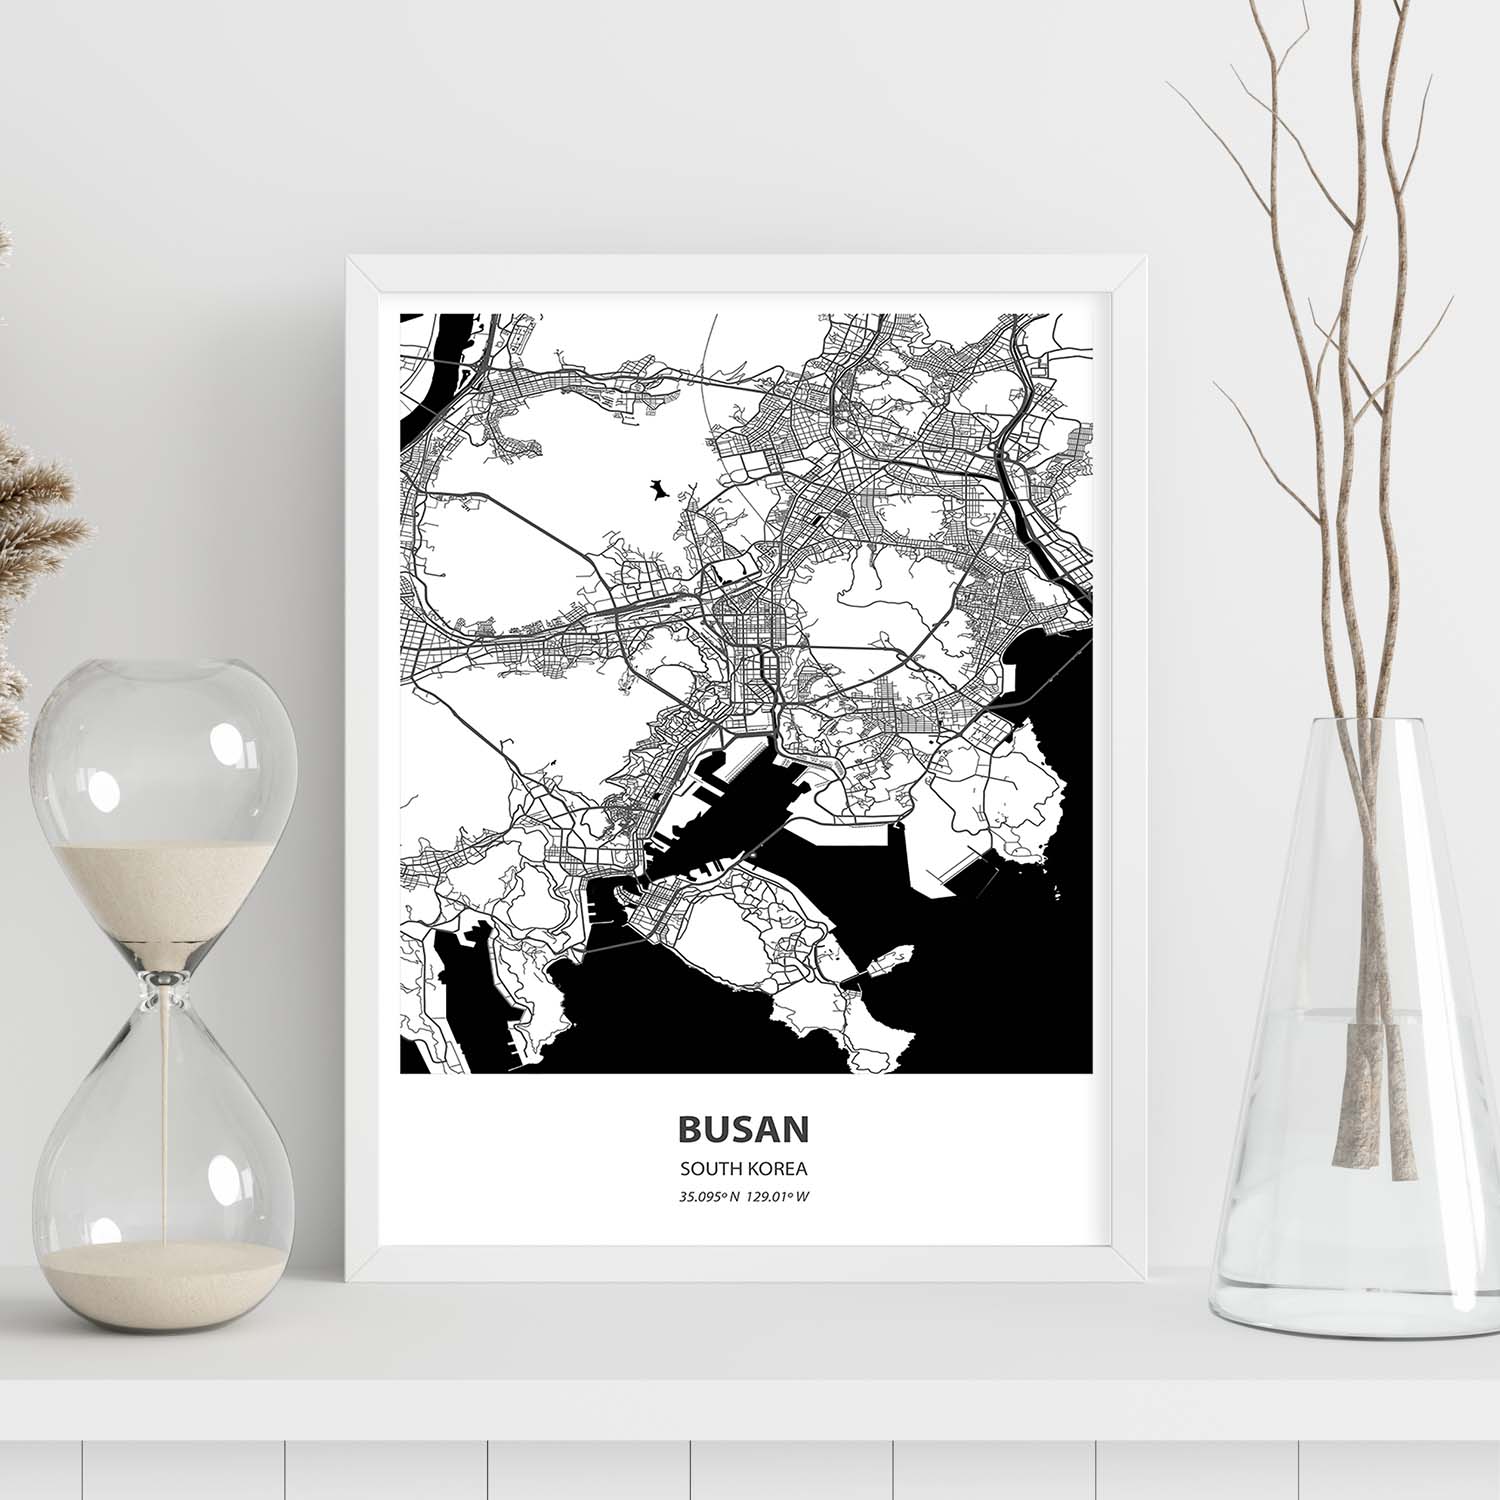 Poster con mapa de Busan - Corea del Sur. Láminas de ciudades de Asia con mares y ríos en color negro.-Artwork-Nacnic-Nacnic Estudio SL